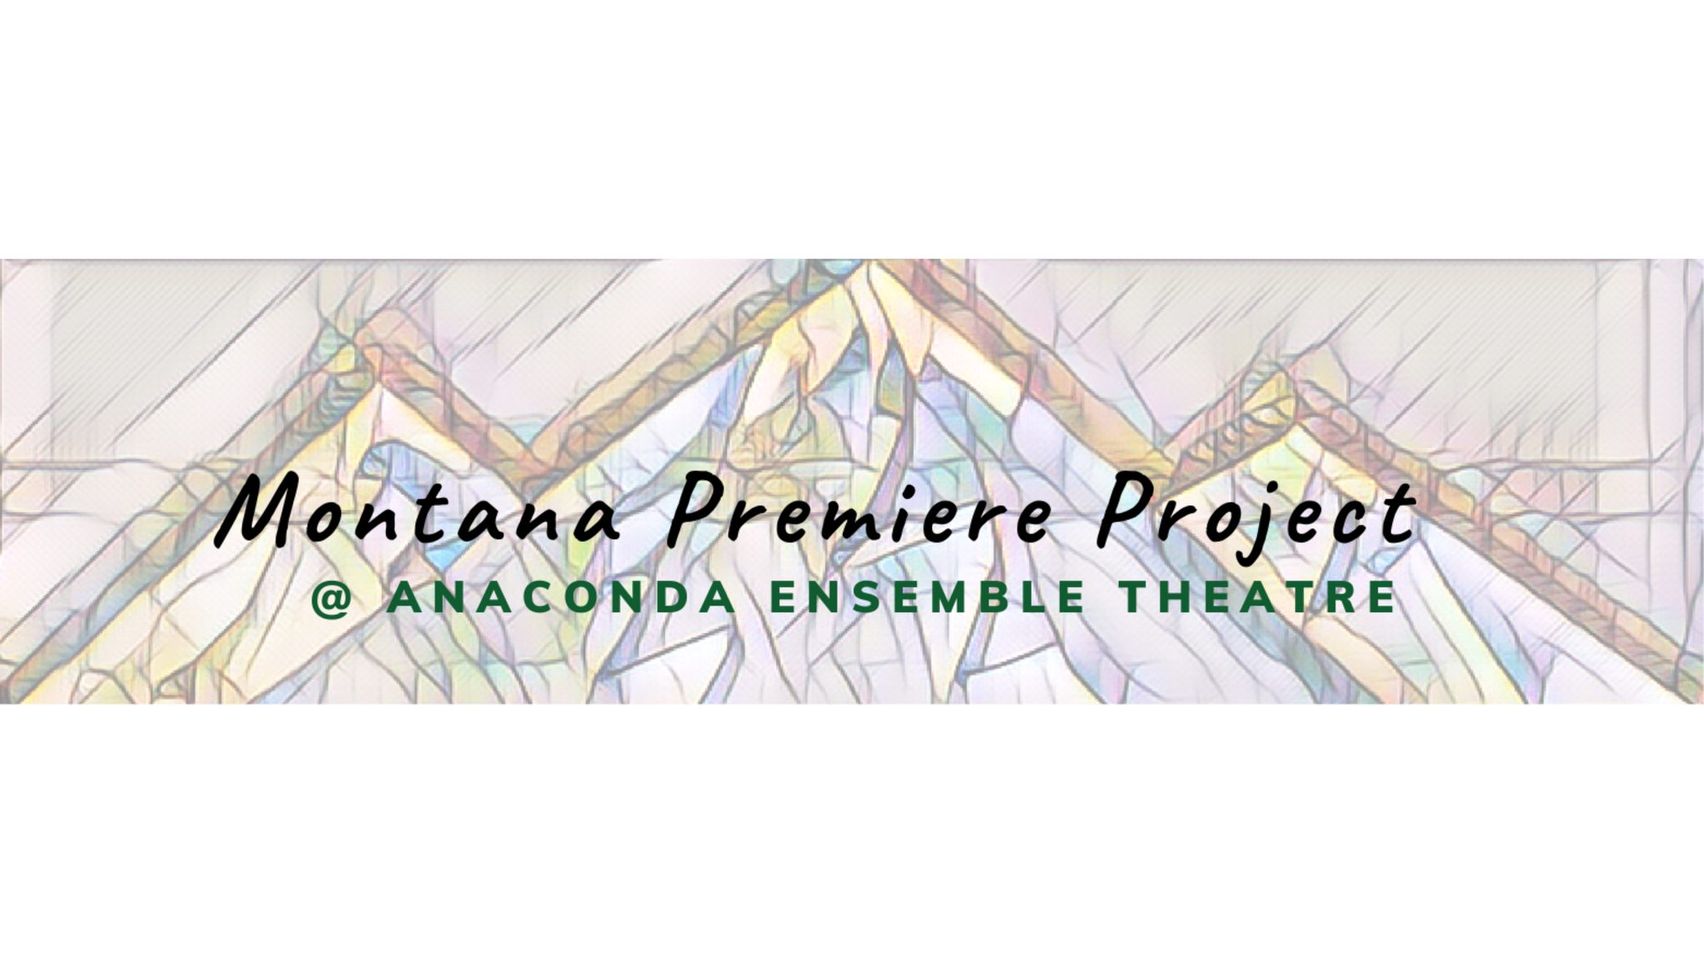 Anaconda Ensemble Theatre presents the Montana Premiere Project